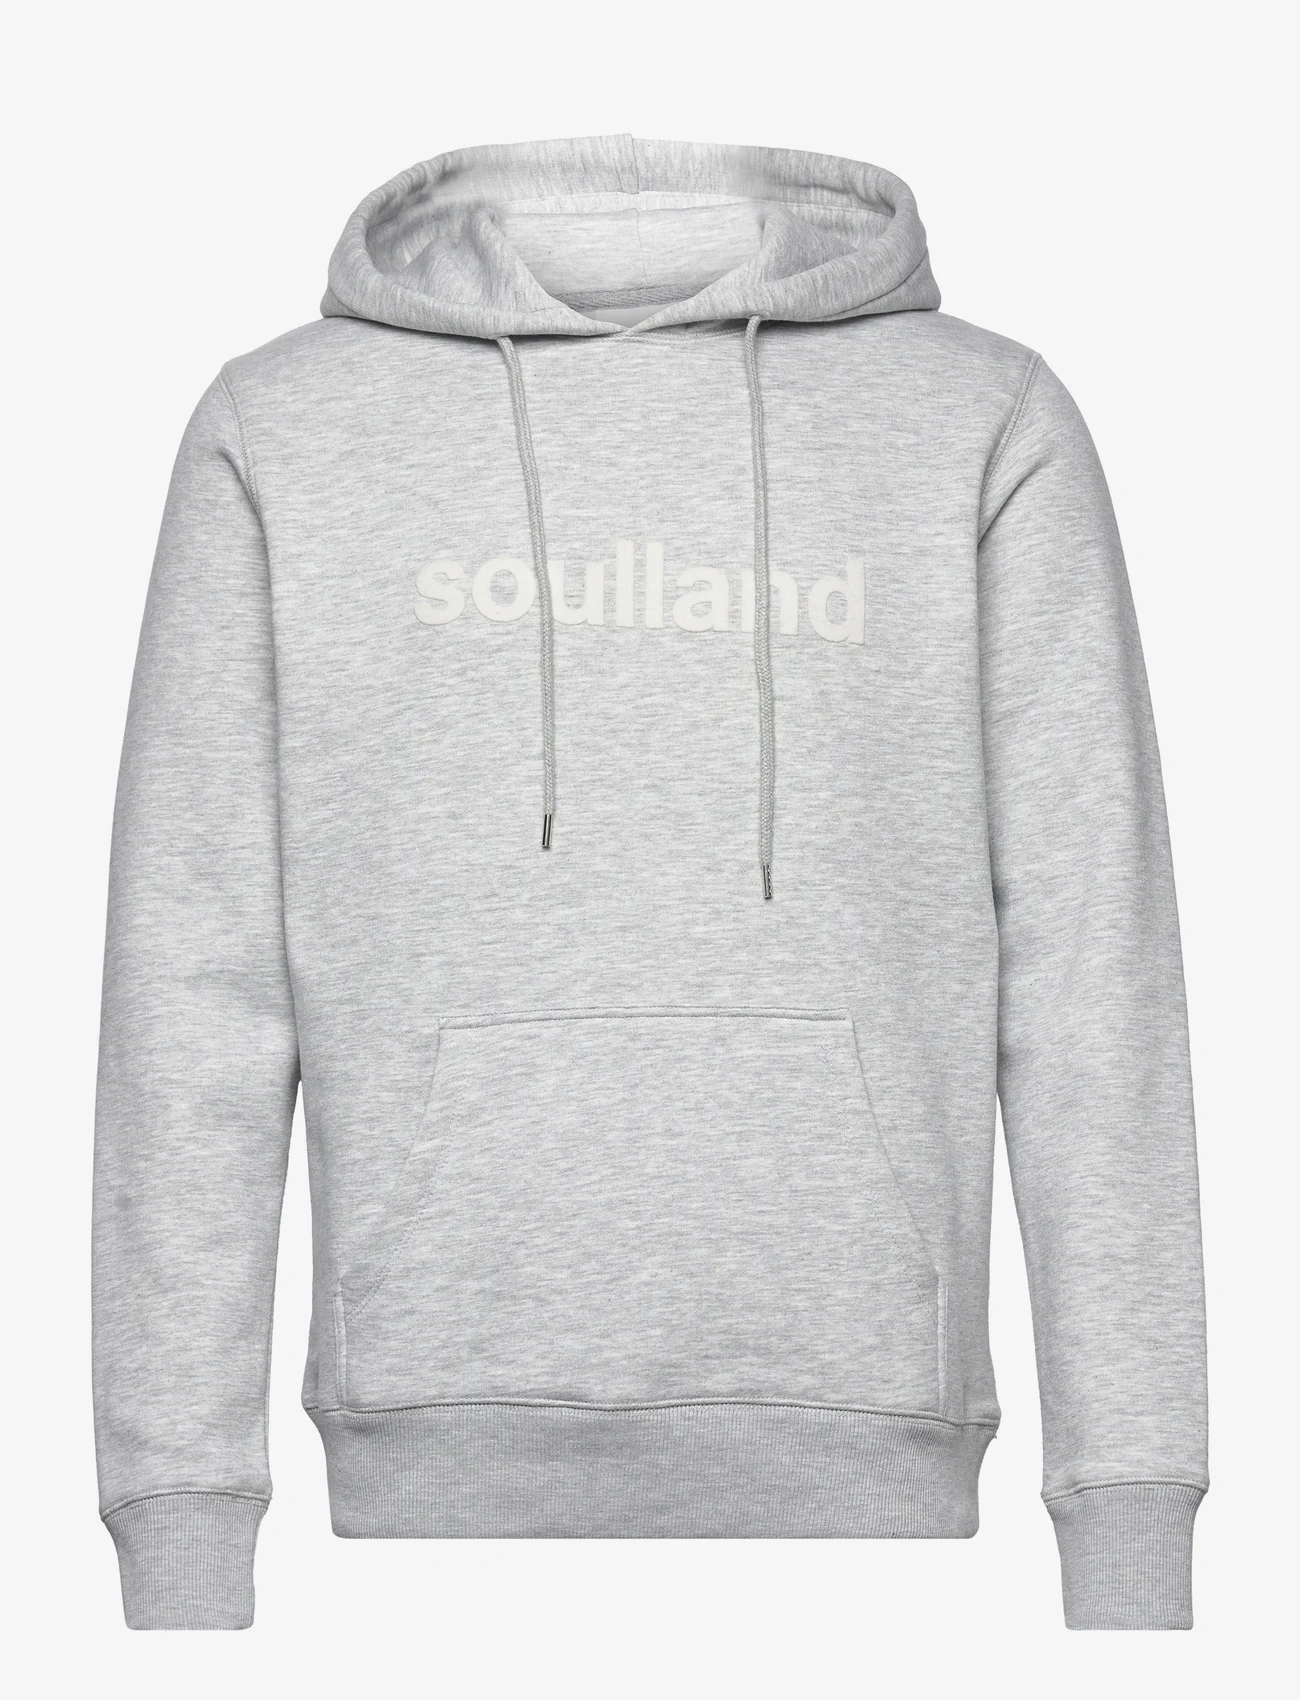 Soulland - Googie hoodie - truien en hoodies - grey melange - 0